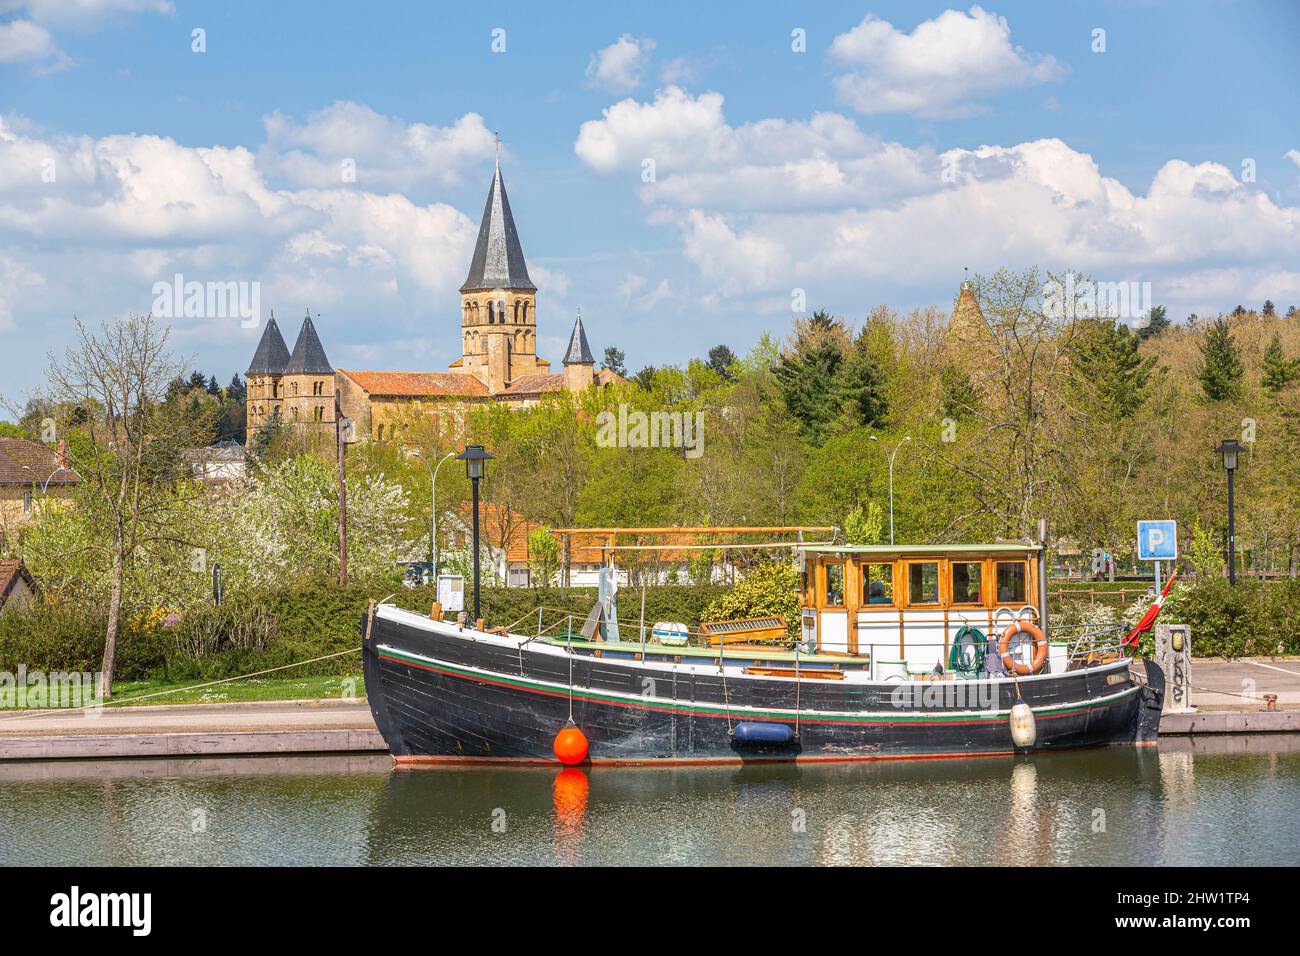 France, Saone-et-Loire, Paray-le-Monial, canal du Centre, Basilique du Sacre Coeur (Sacred Heart Basilica) Stock Photo